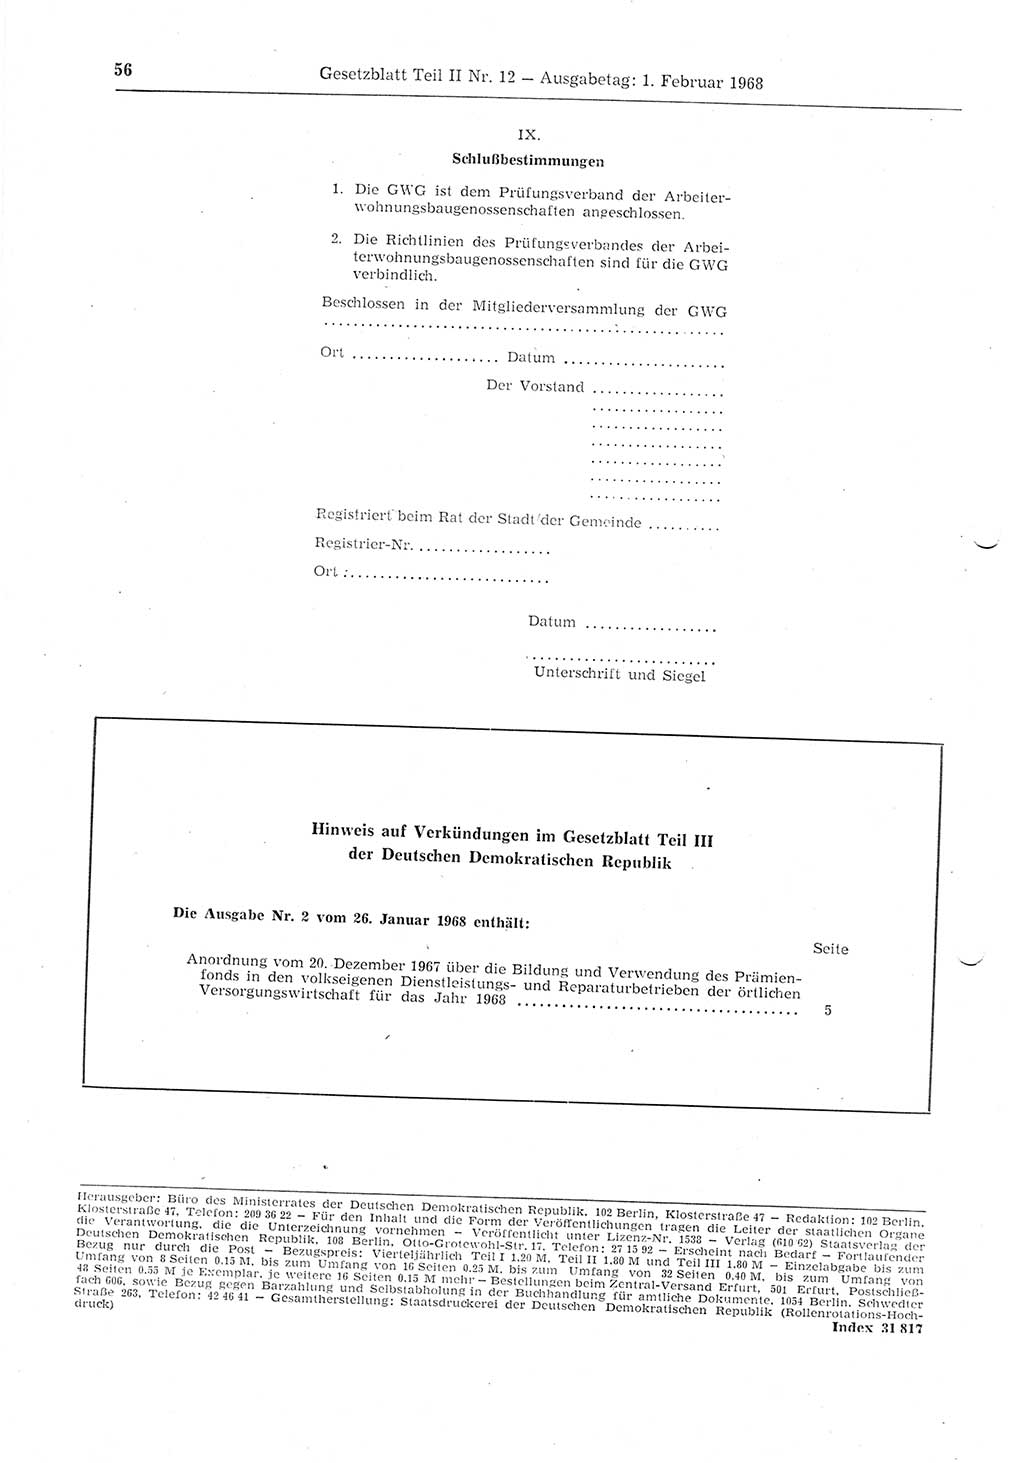 Gesetzblatt (GBl.) der Deutschen Demokratischen Republik (DDR) Teil ⅠⅠ 1968, Seite 56 (GBl. DDR ⅠⅠ 1968, S. 56)